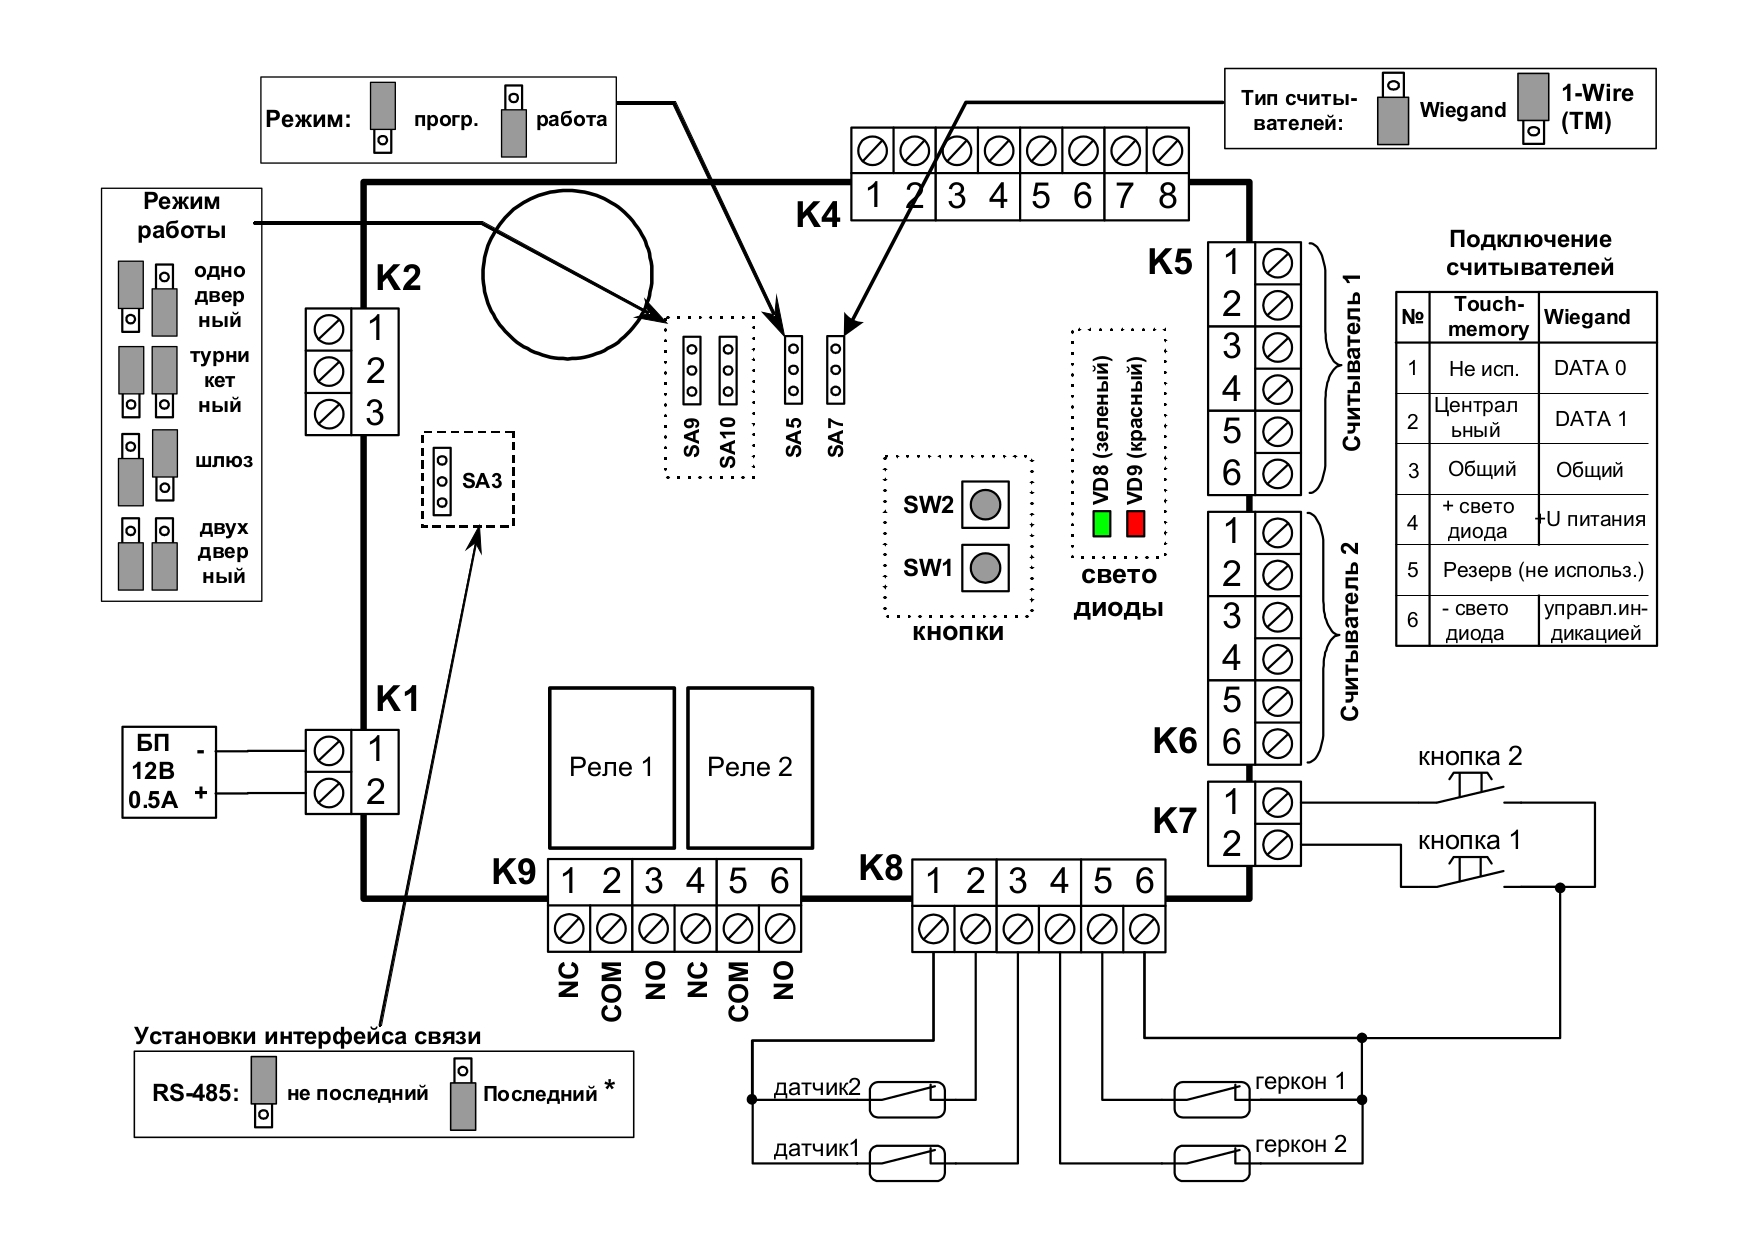 Универсальный контроллер, память на 16 тыс.ключей, 8 тыс.событий и 7 расписаний. RS-485. 2 входа считывателей Wiegand 26 или 48-автомат (опционально:1-Wire (TM), ABA-2), 4 тревожных входа. 2 реле (30В DC/6A)